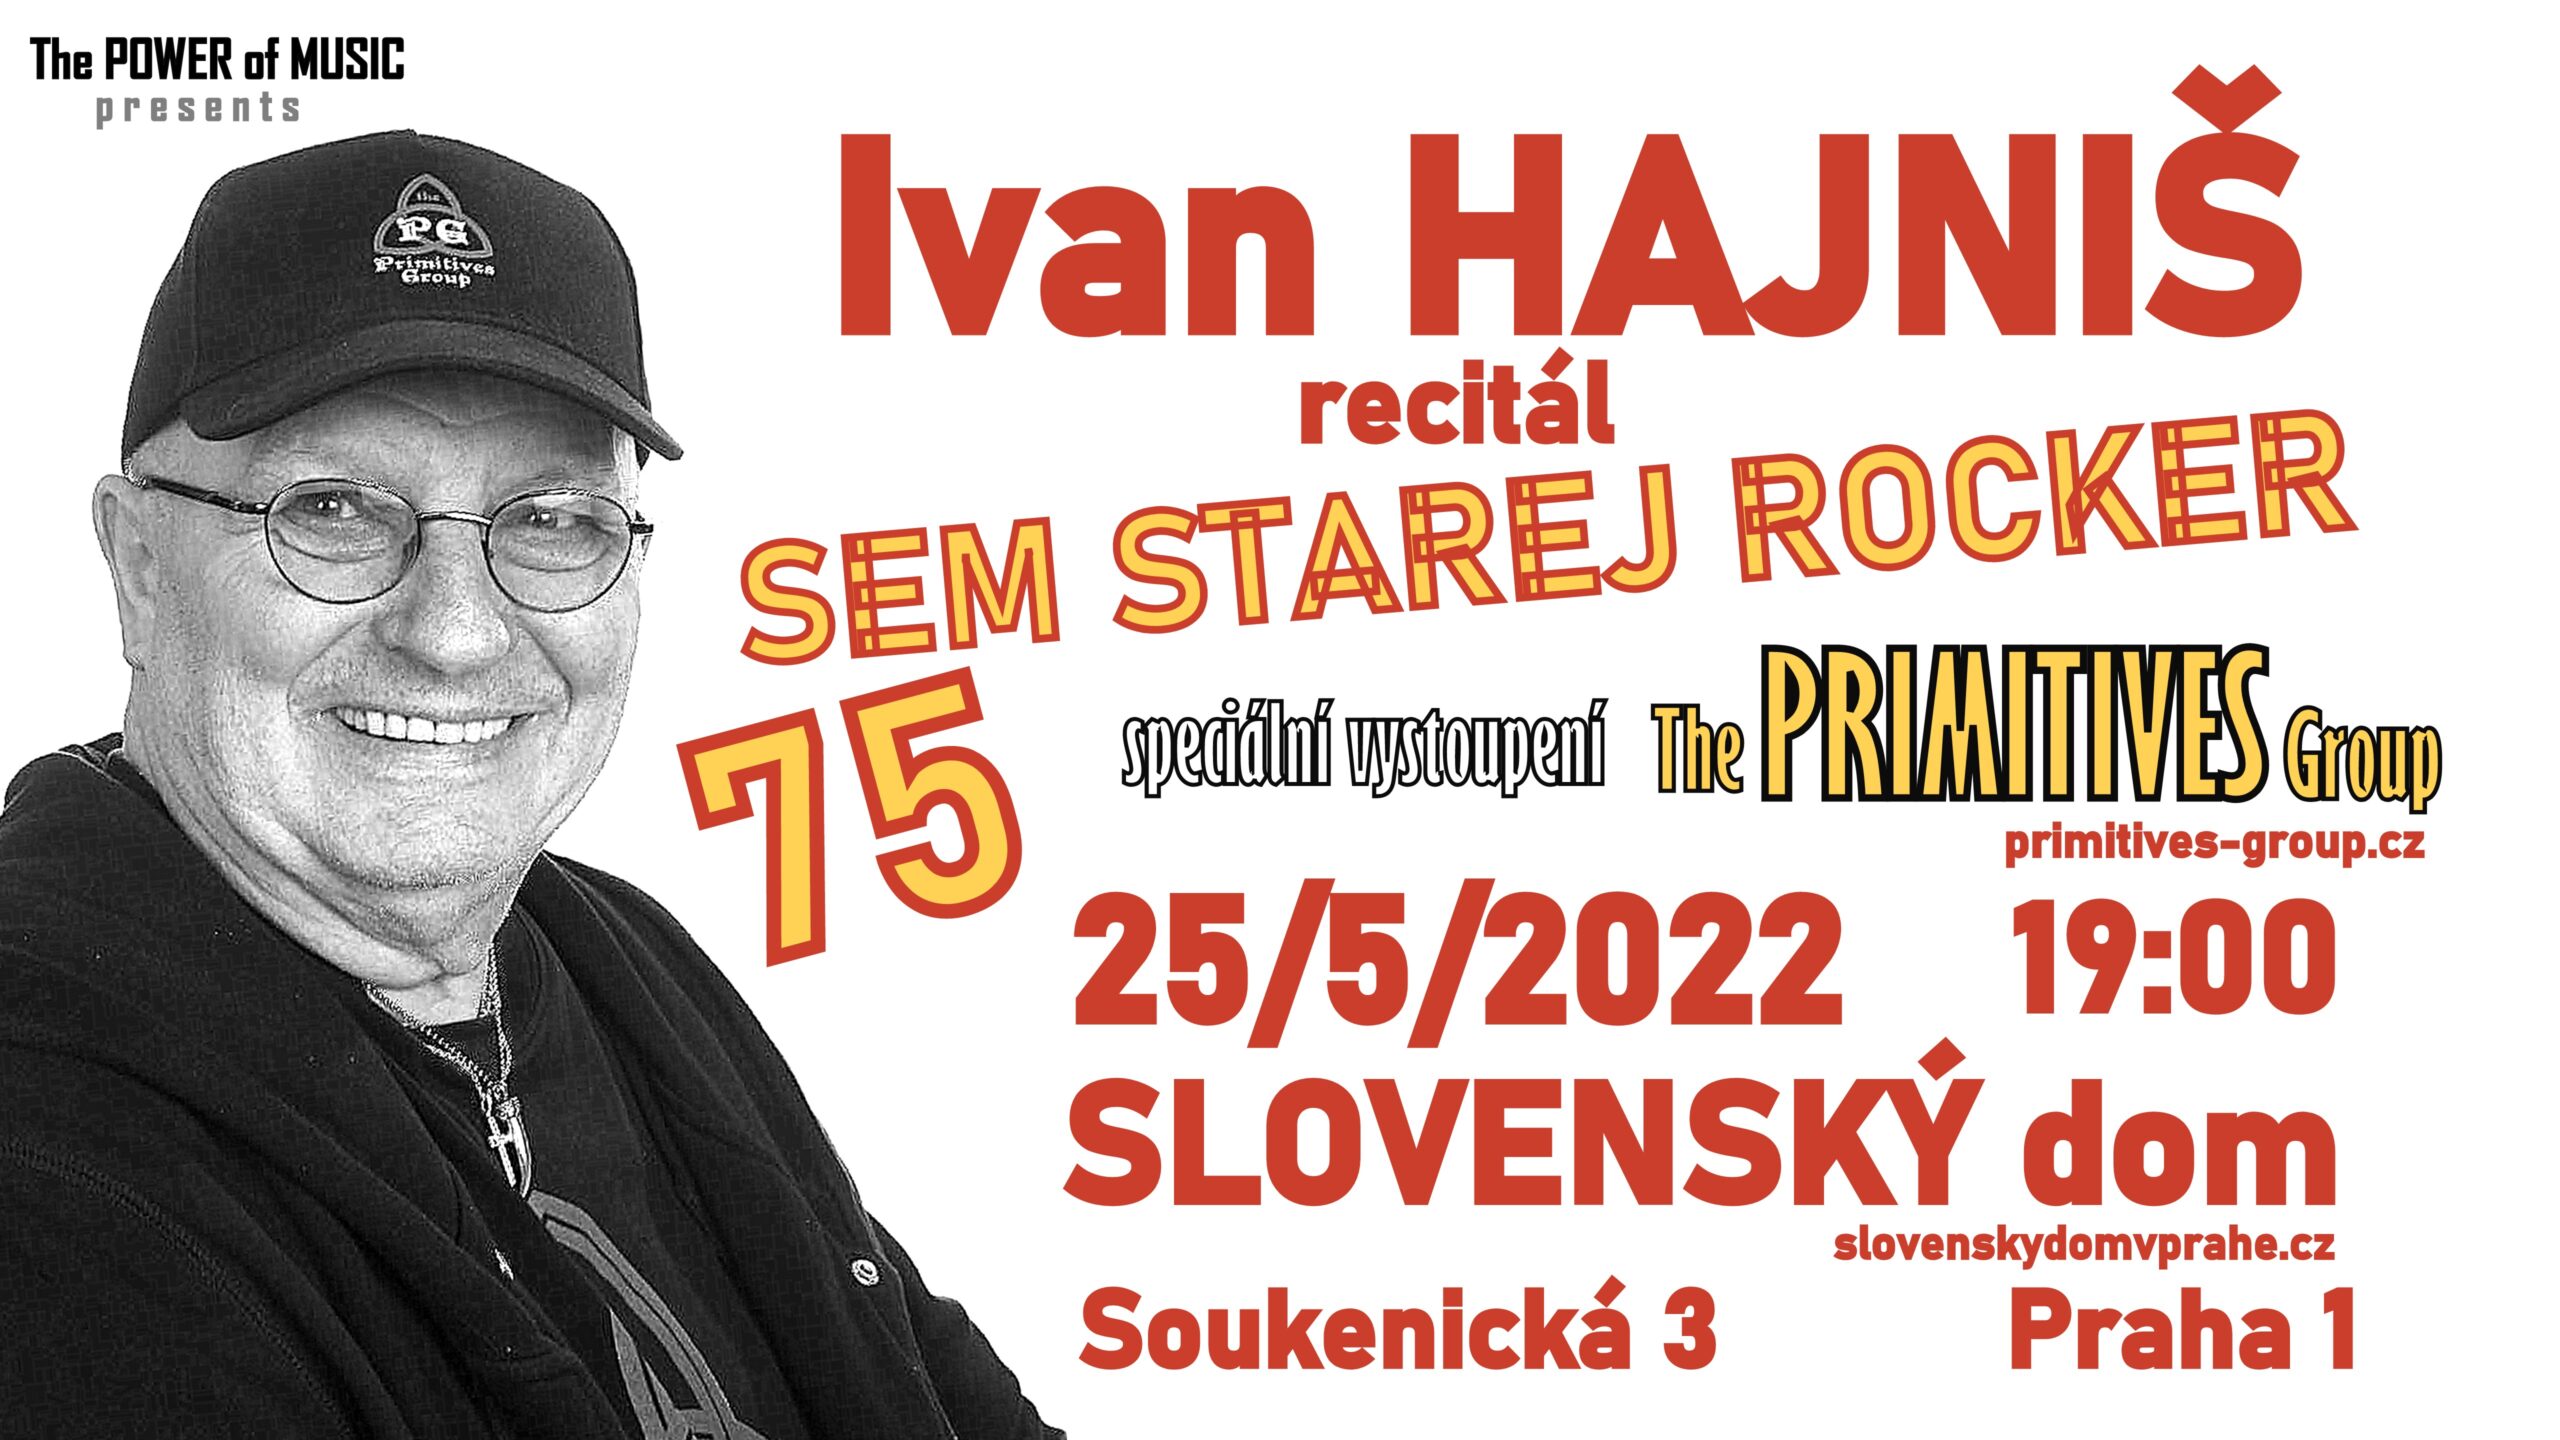 HAJNIS_75_SLOVENSKY_DOM_2022_promo-scaled